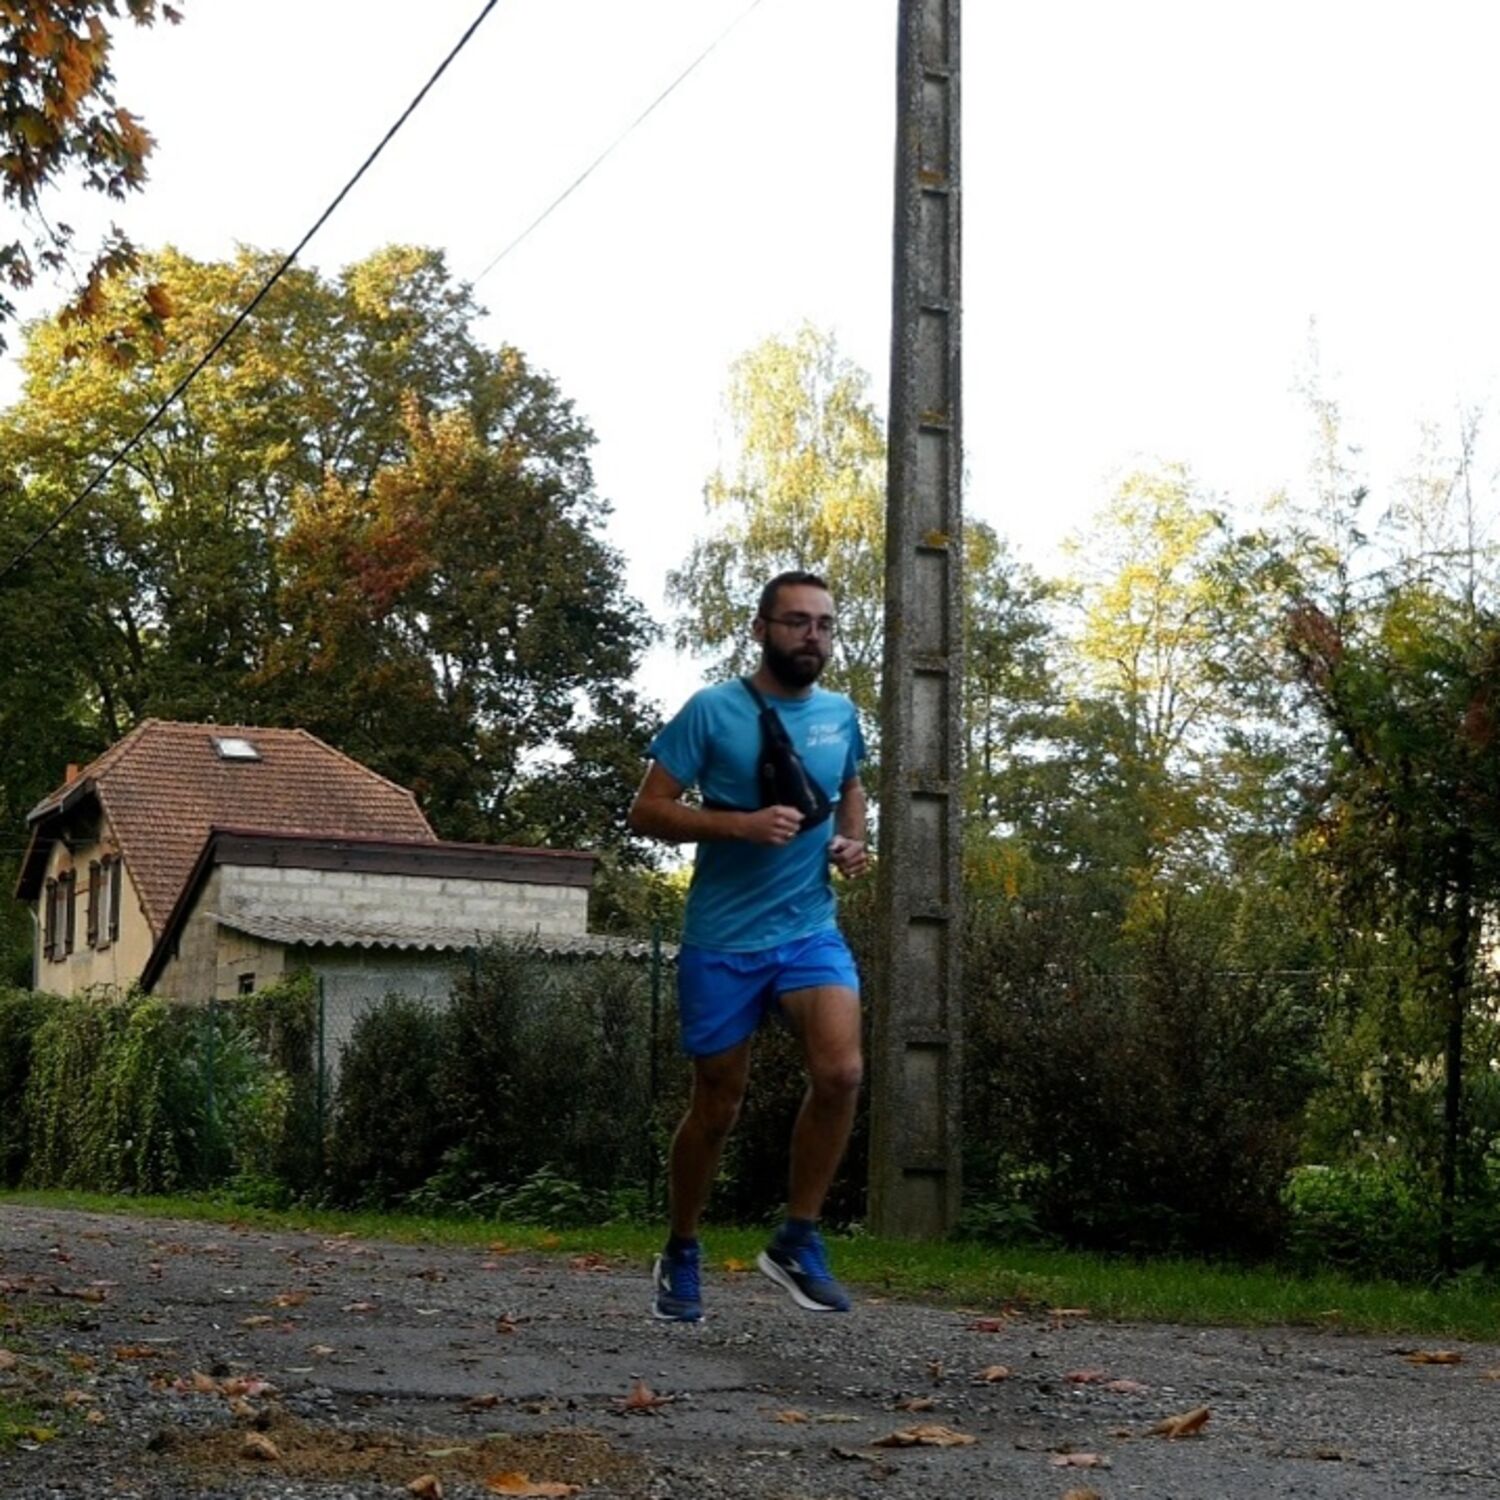 Run in Reims: Florian prépare son premier marathon